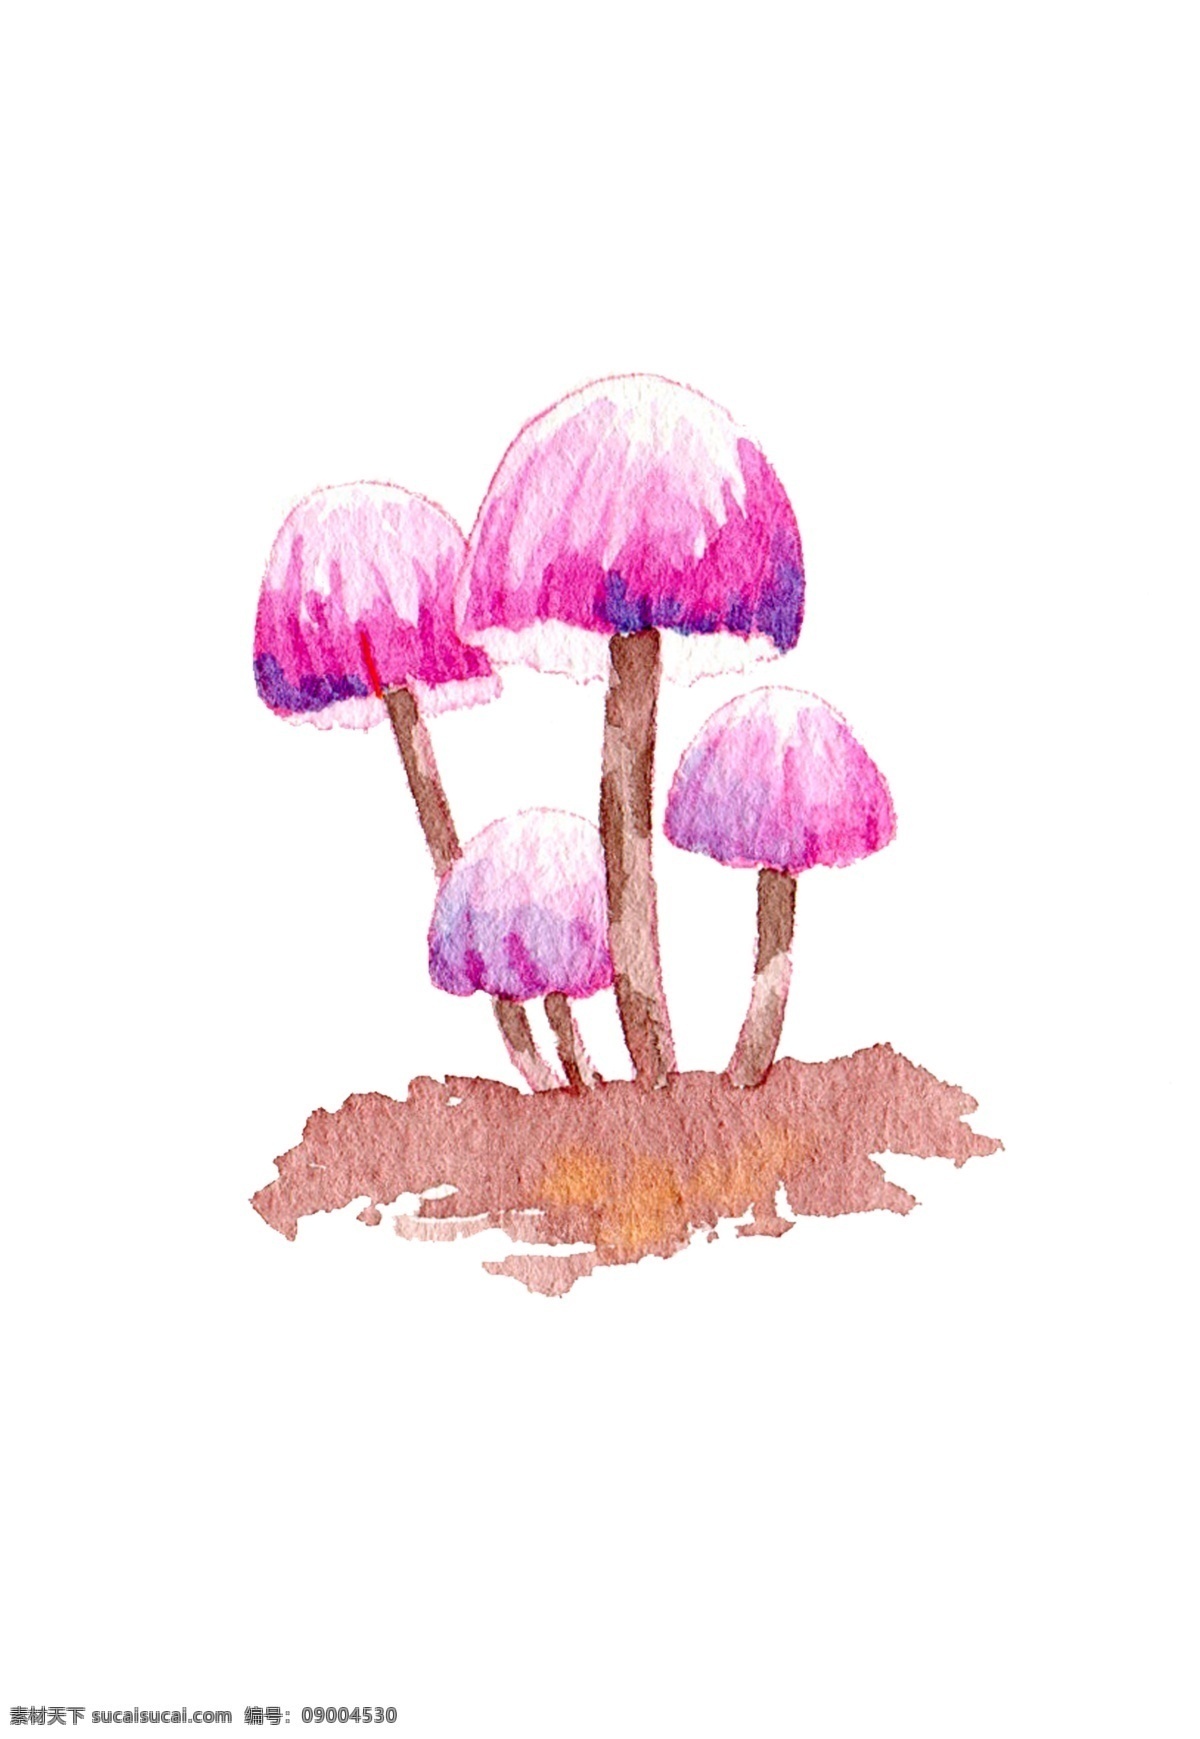 手绘 蘑菇 水彩 秋日 手绘蘑菇 水彩蘑菇 秋日蘑菇 蘑菇插画 食用蘑菇 秋天 秋季 菇类 菌类